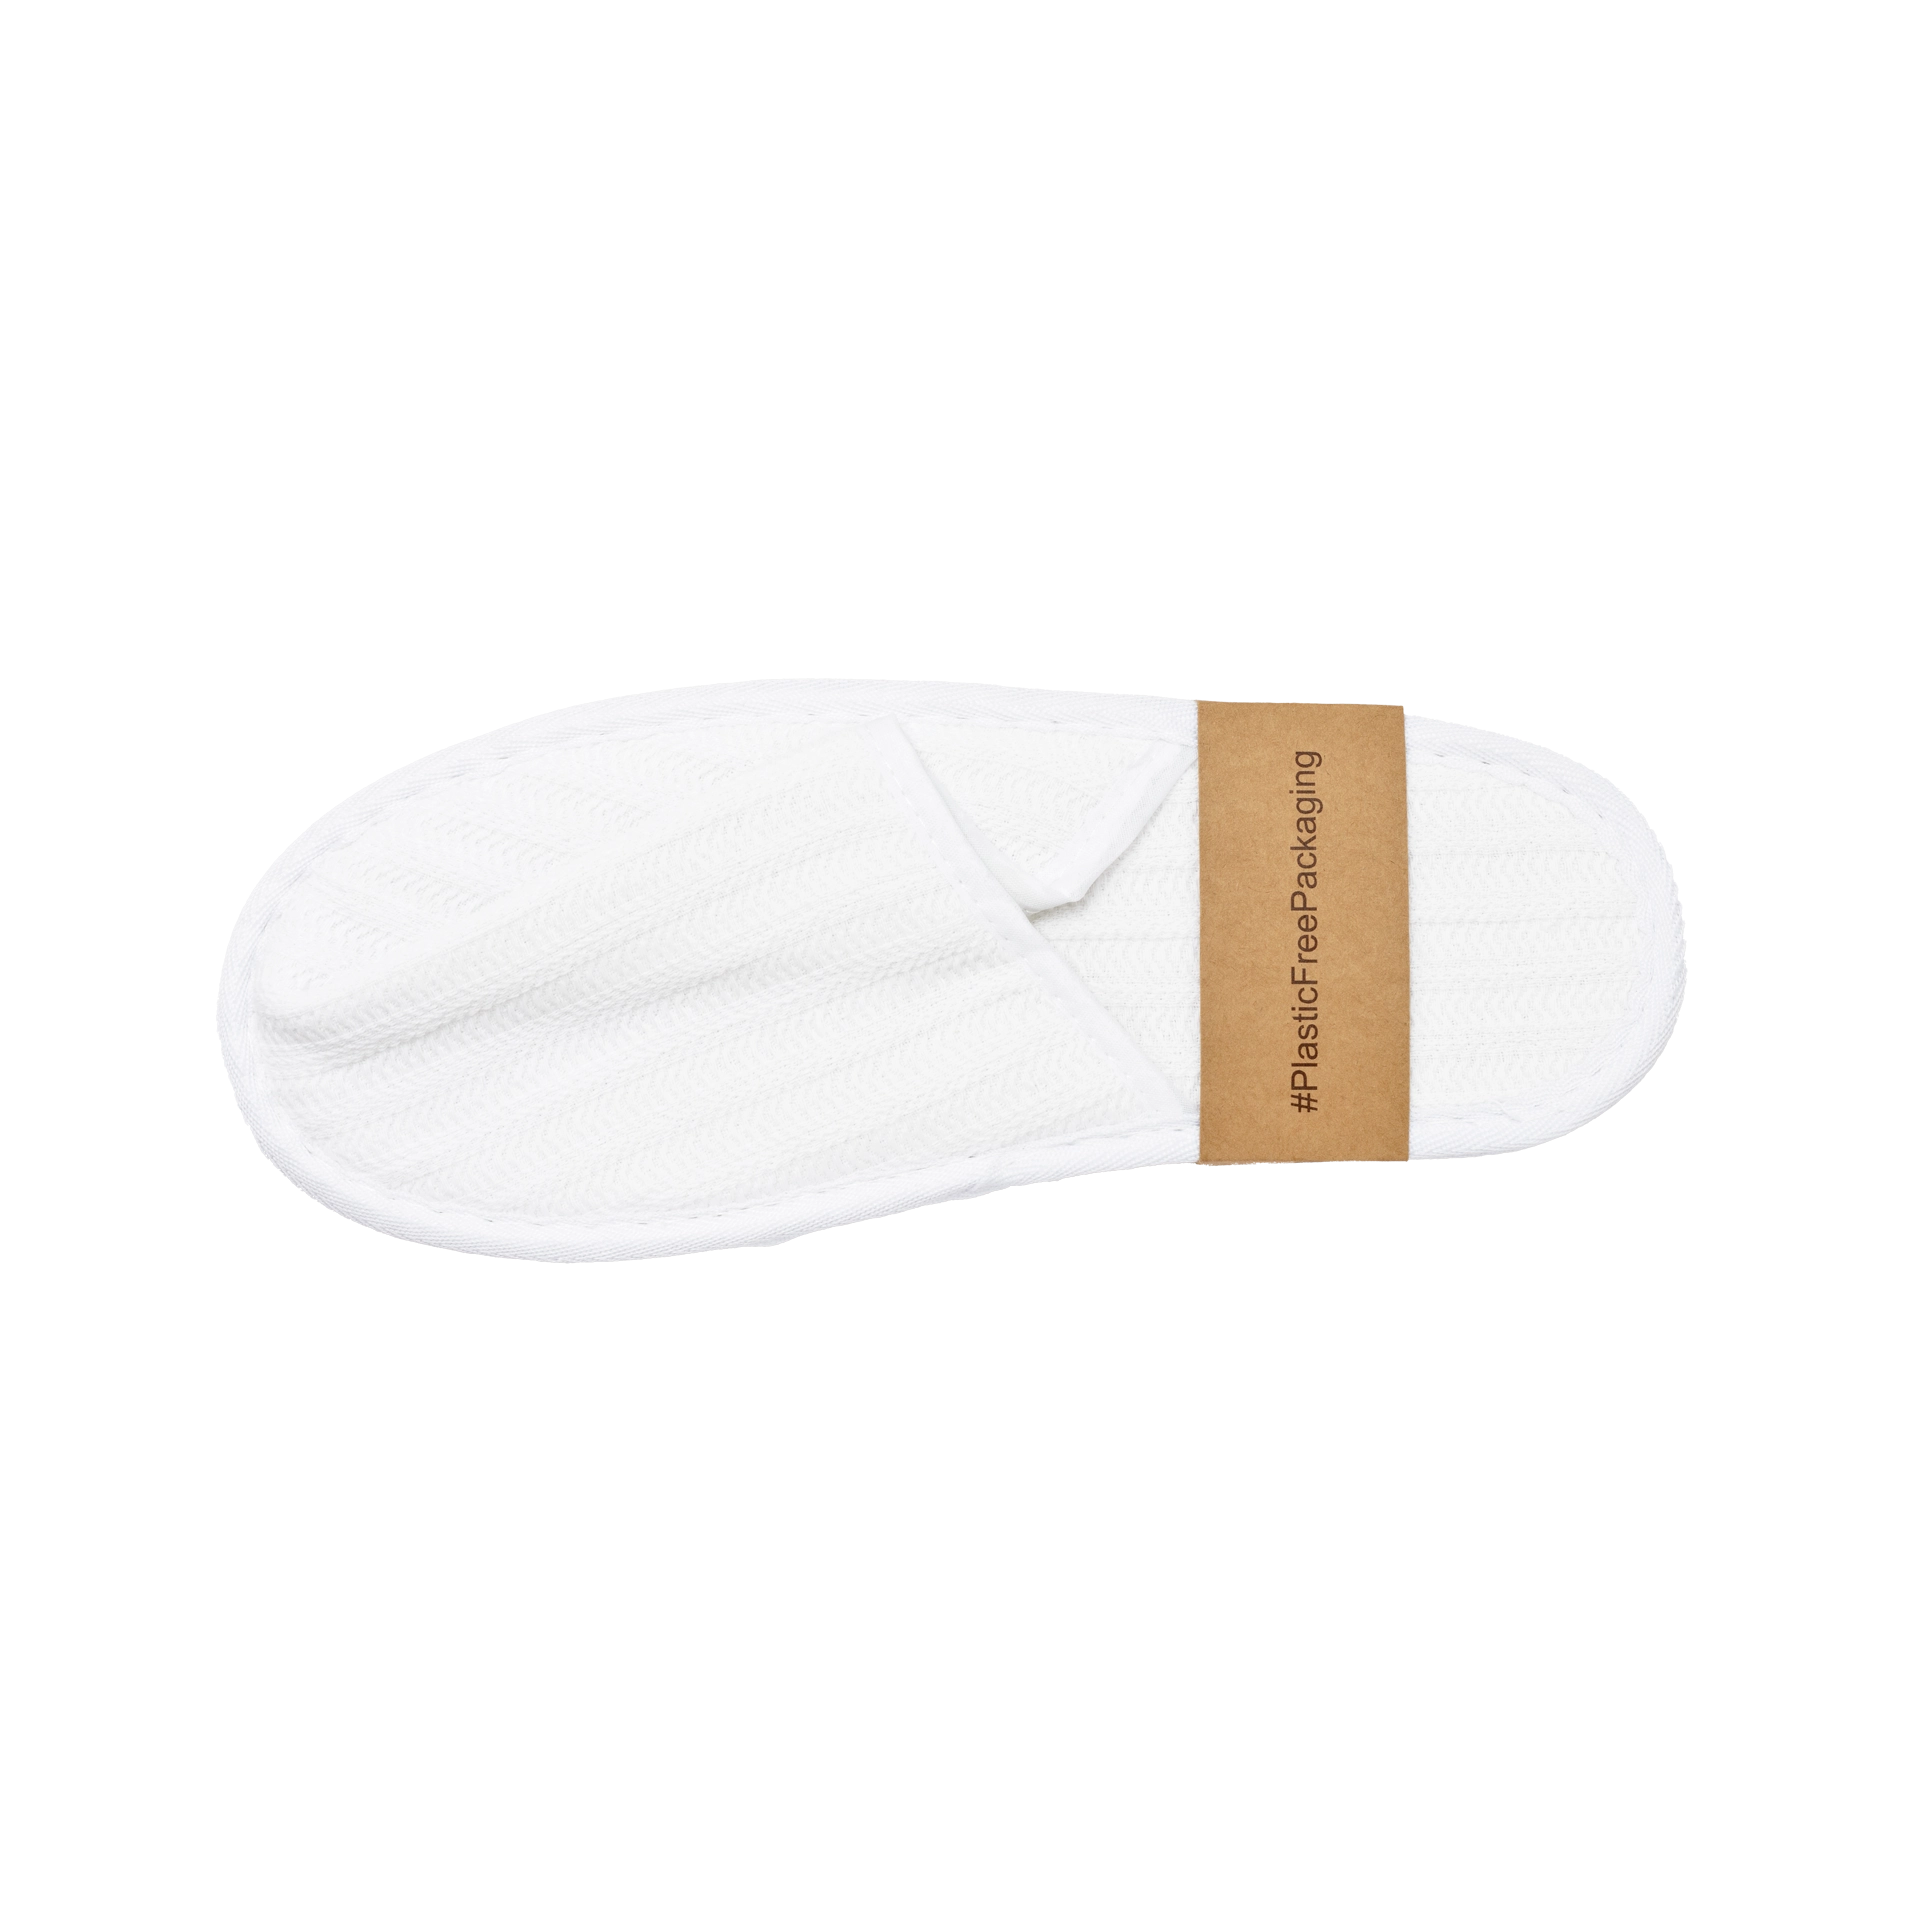 Pantofoline chiuse 100% cotone Nature Piquet bianco 28,5cm suola a puntini 5 mm (fascetta in carta)